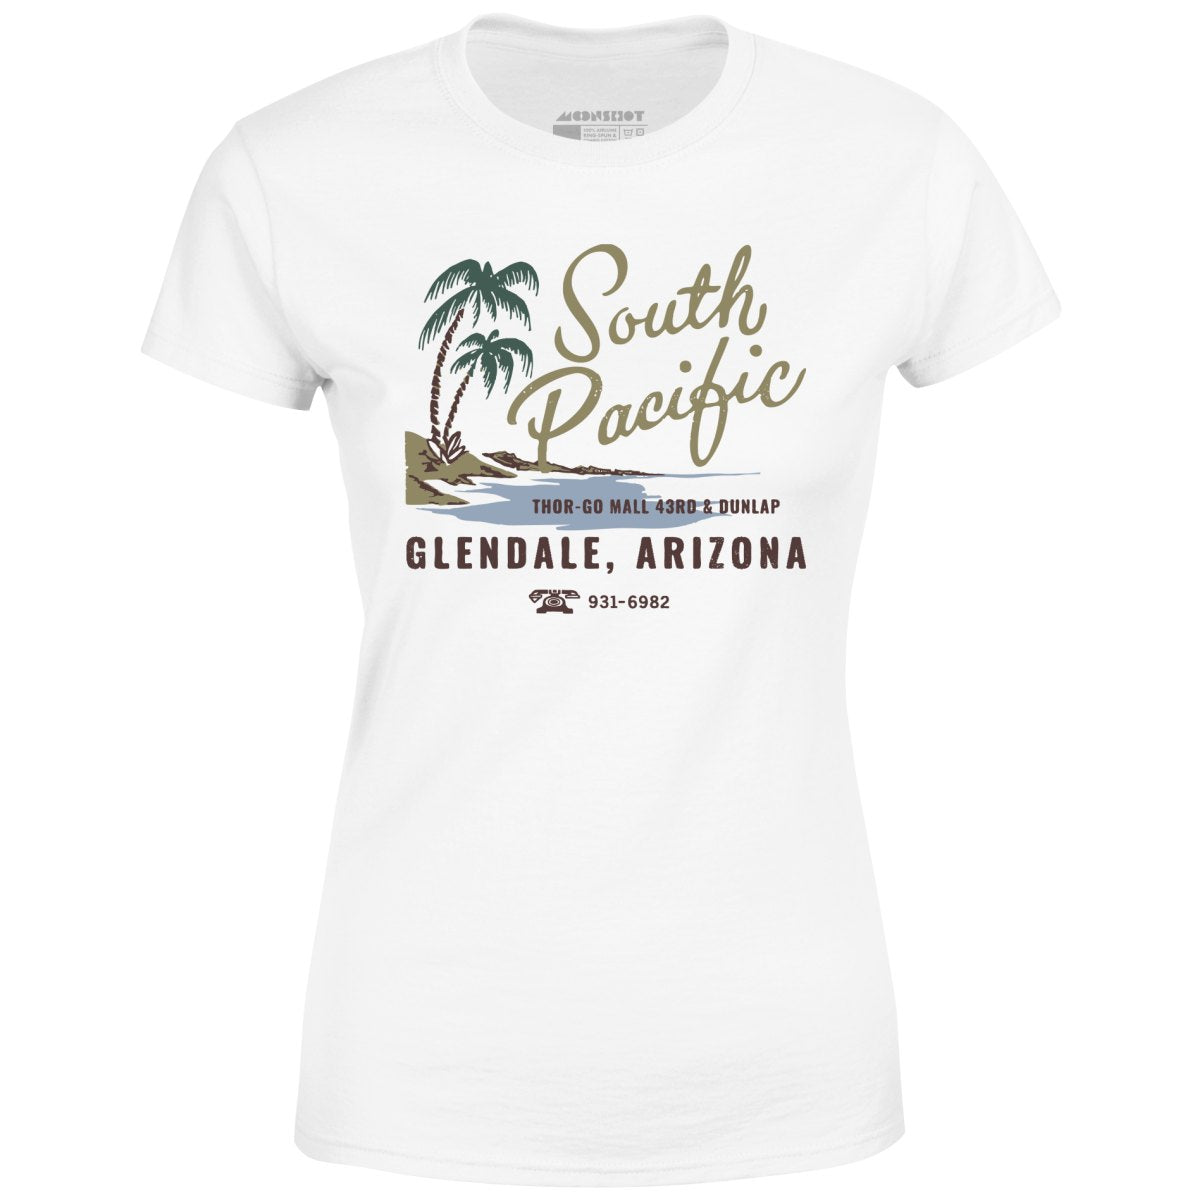 South Pacific - Glendale, AZ - Vintage Tiki Bar - Women's T-Shirt